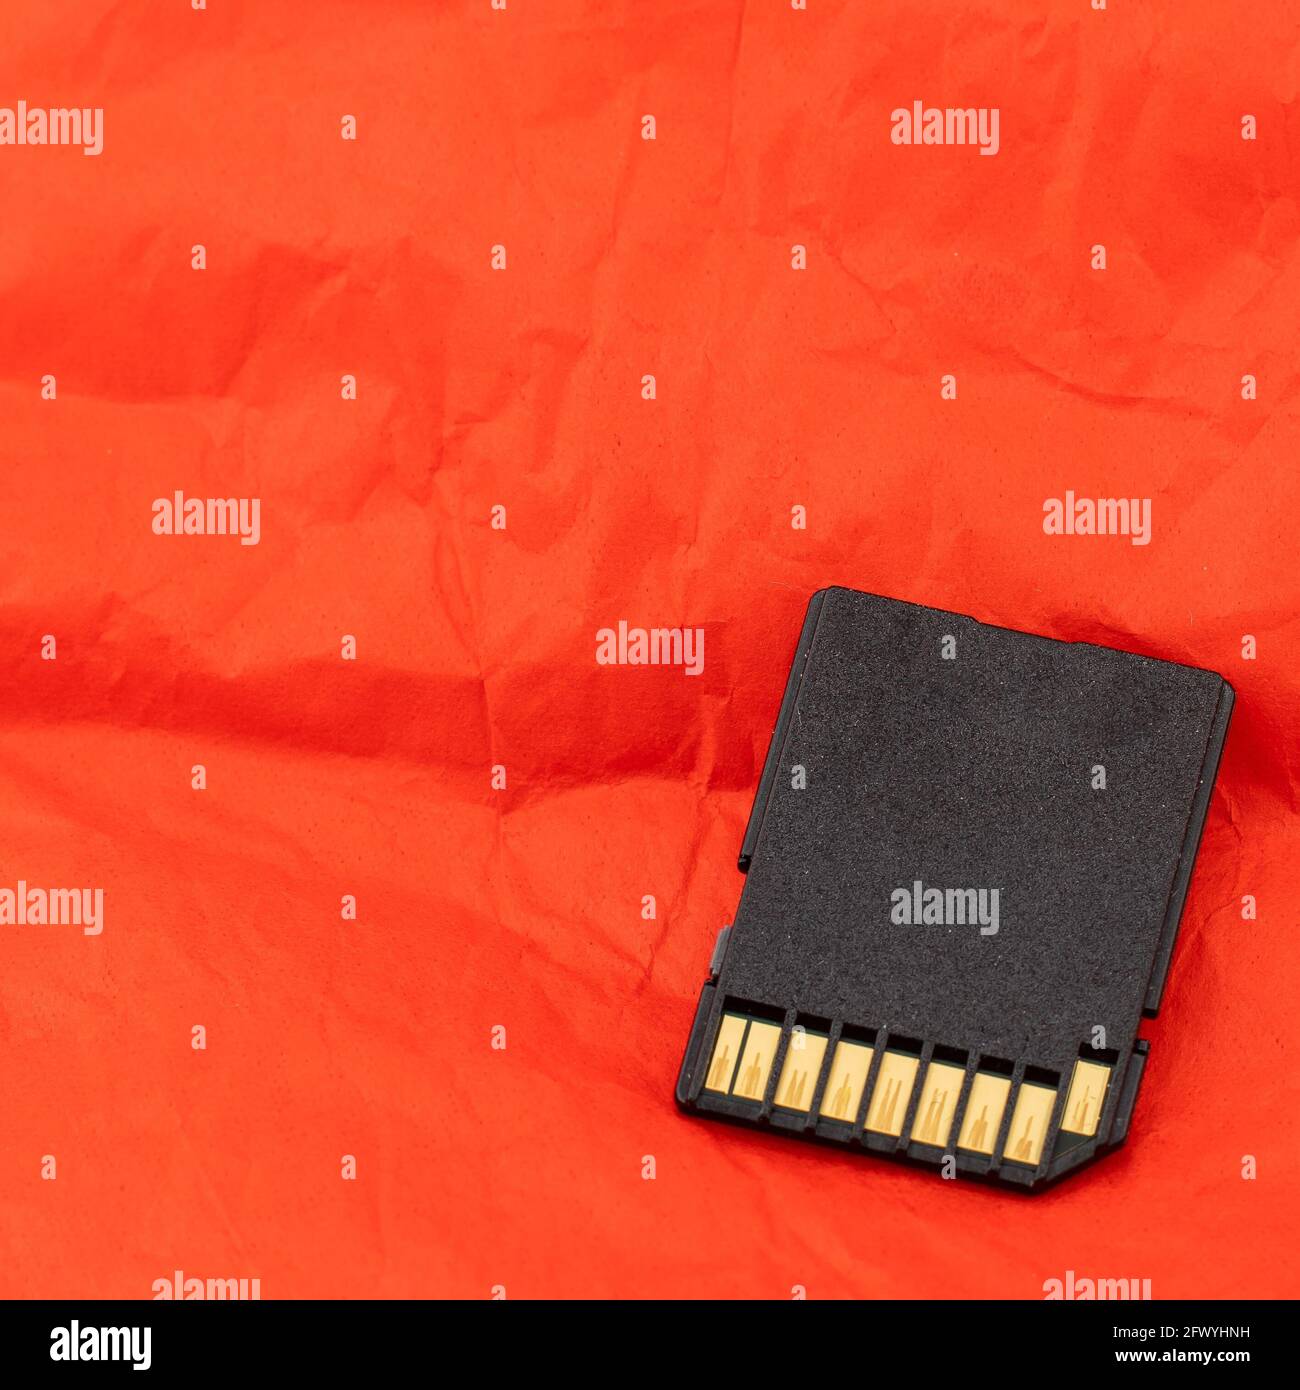 scheda sd, dispositivo di archiviazione, dispositivo fotocamera, su sfondo arancione Foto Stock